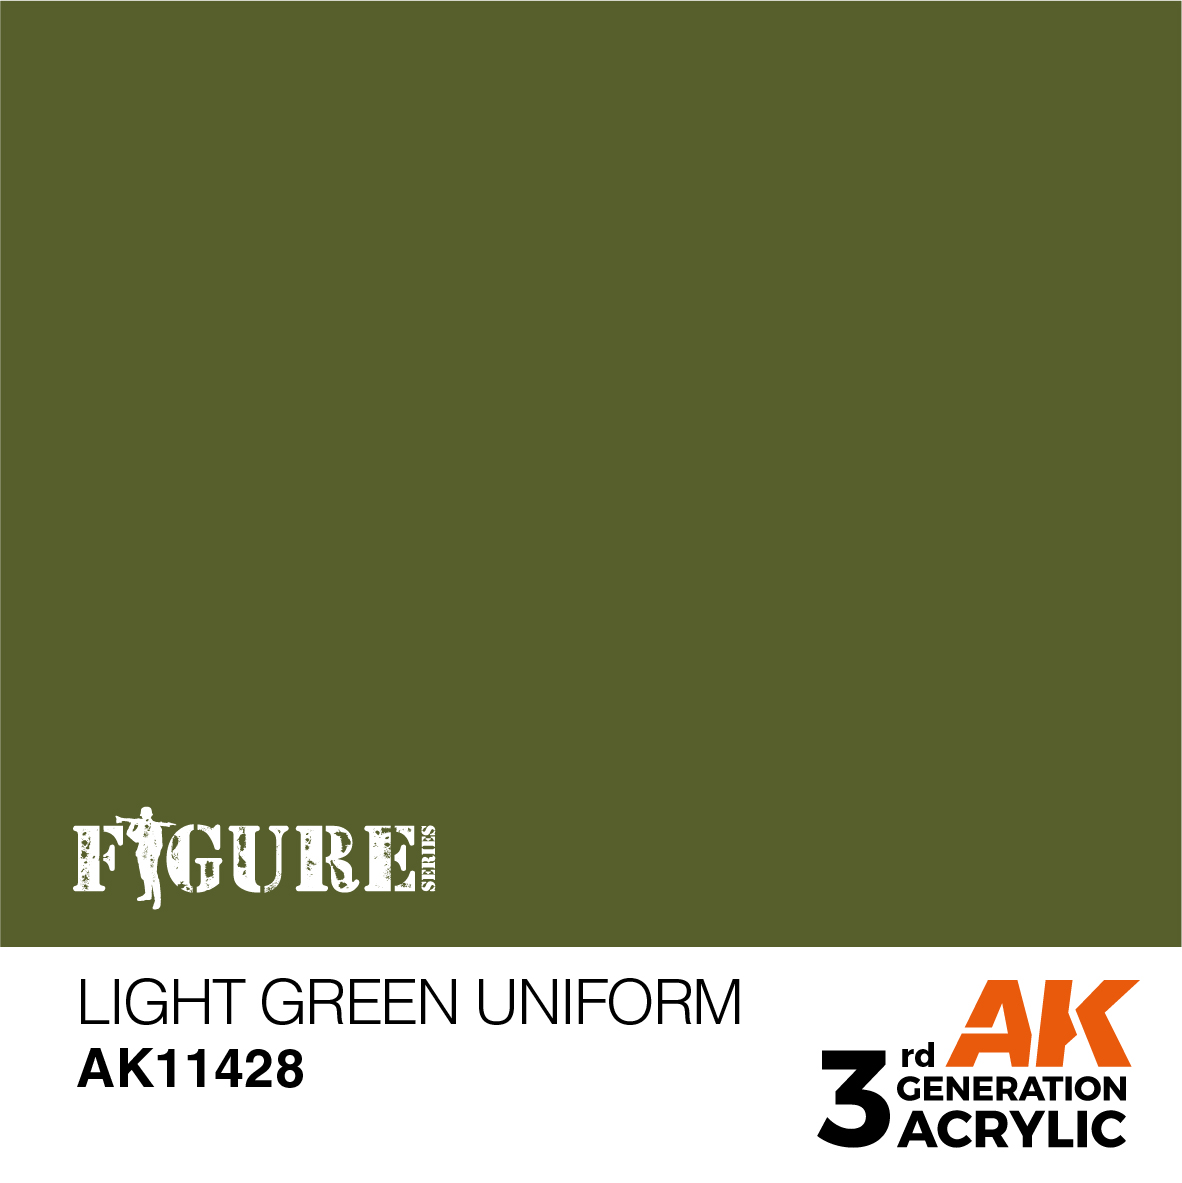 Light Green Uniform – Figures